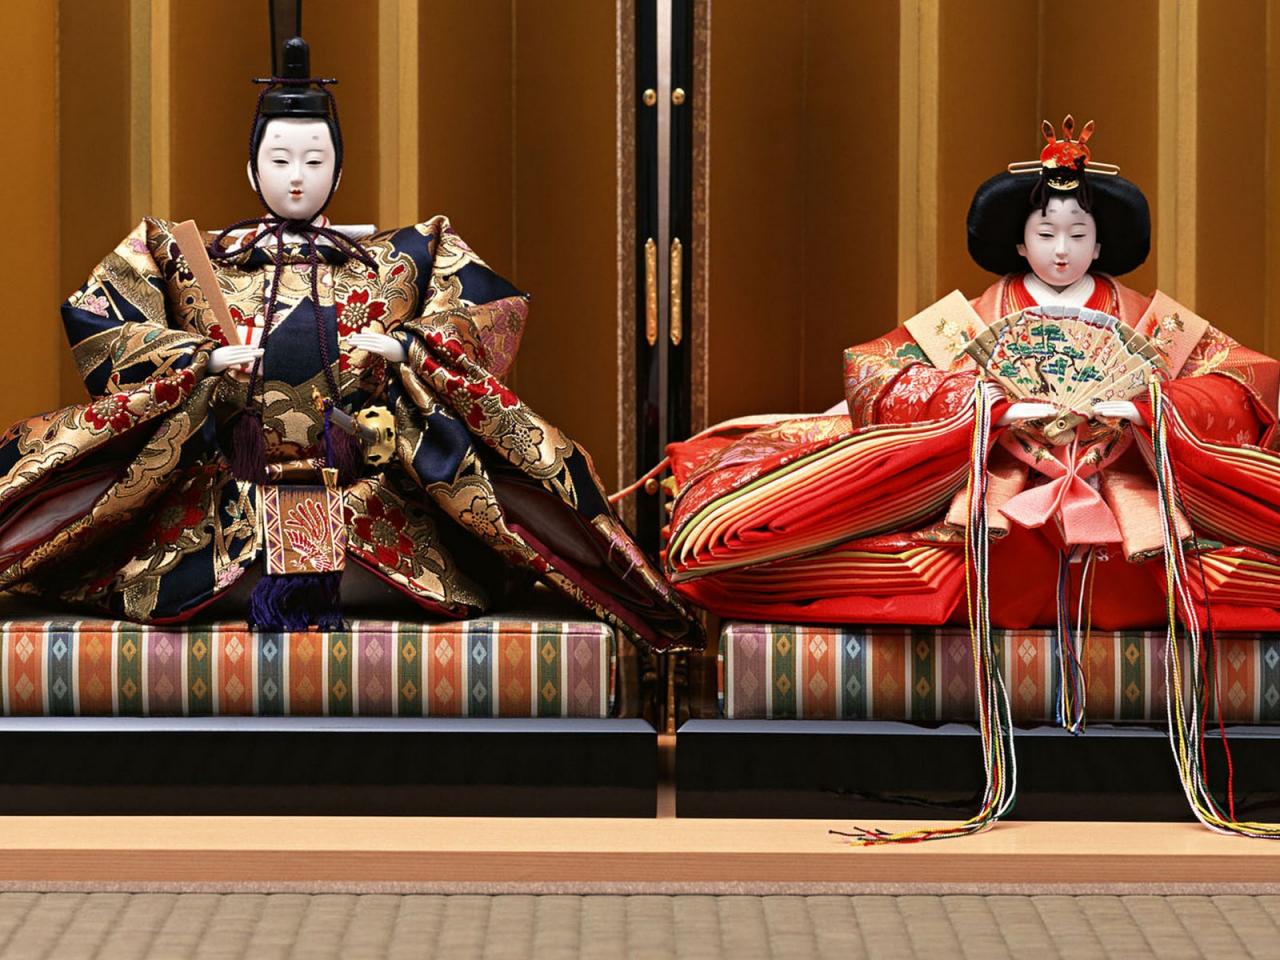 обои Двe куклы восточной культуры фото